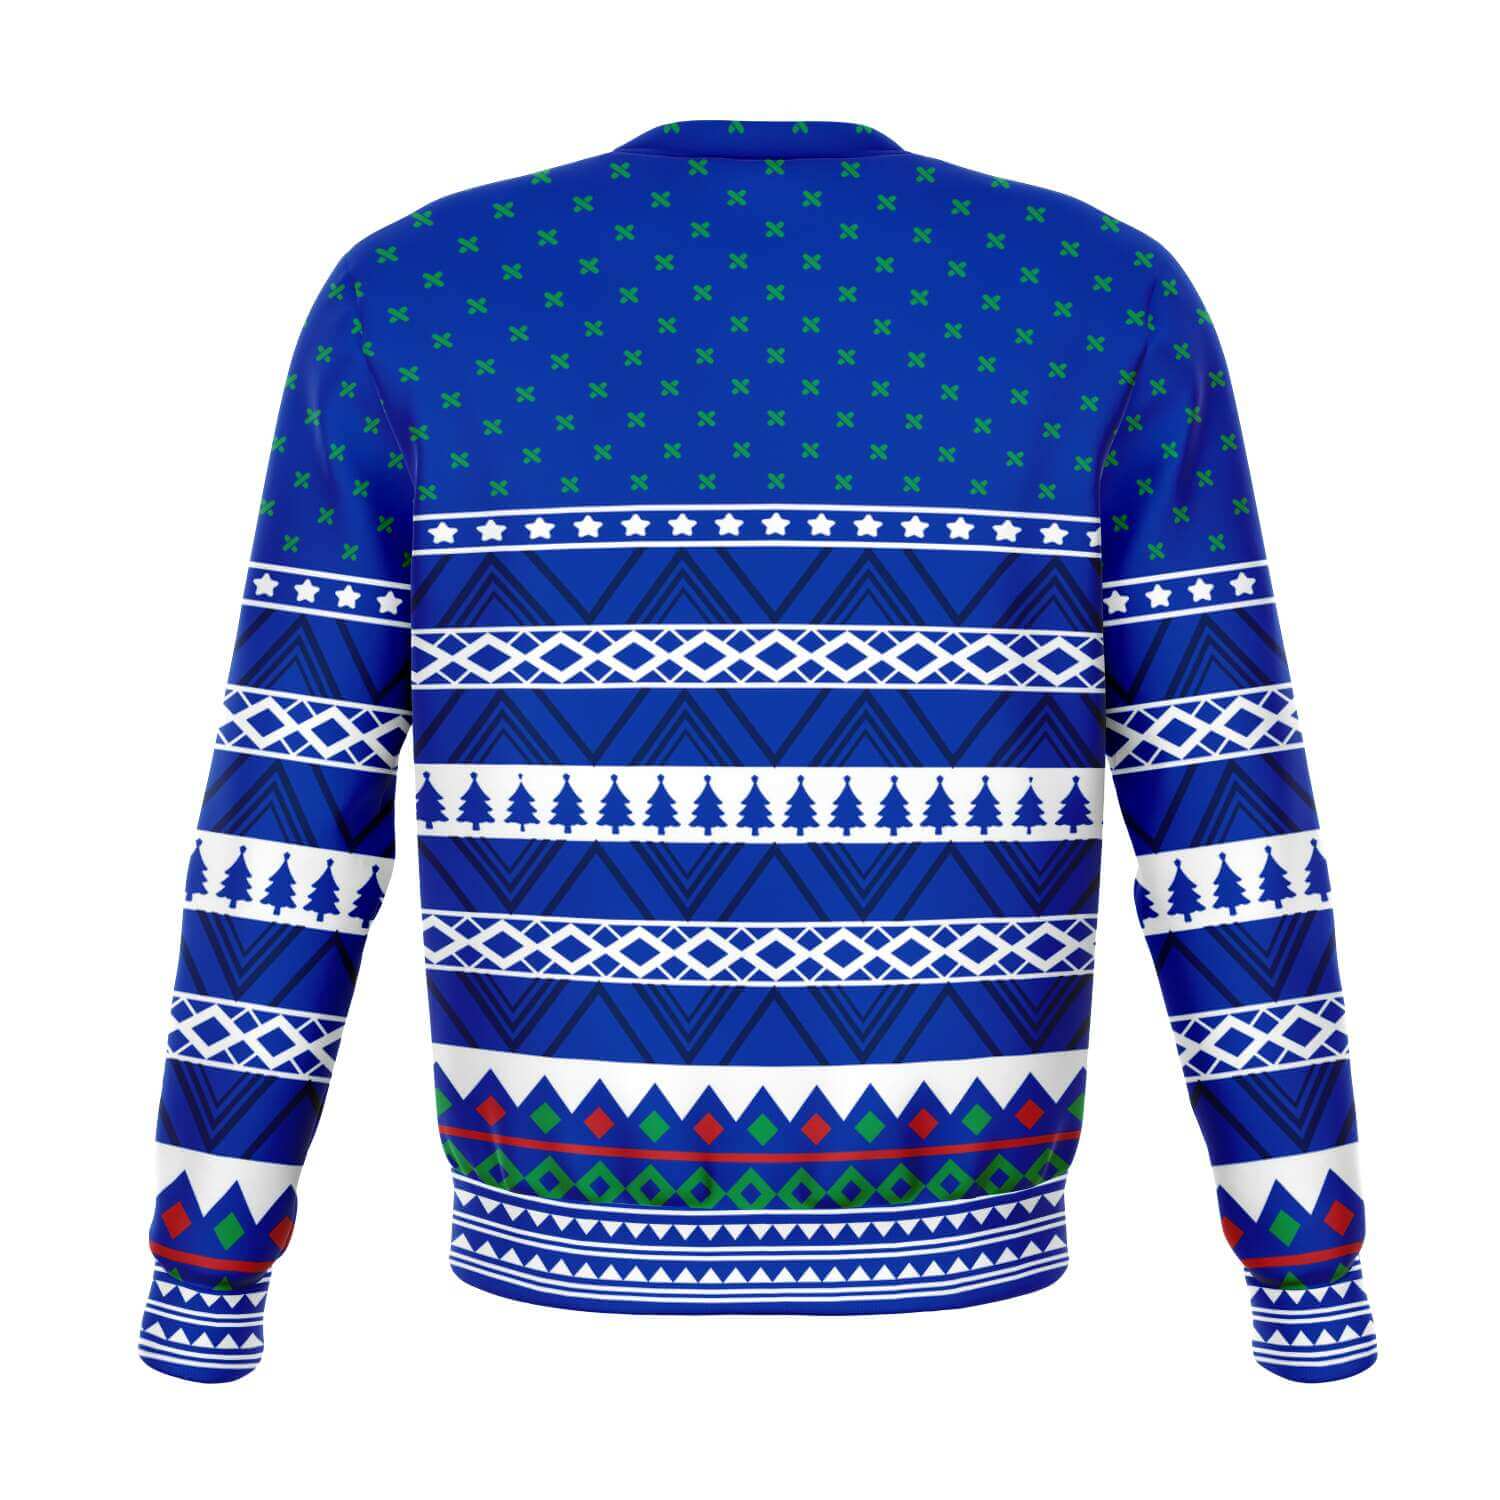 Freeze-Athletic-Fashion-sweatshirt